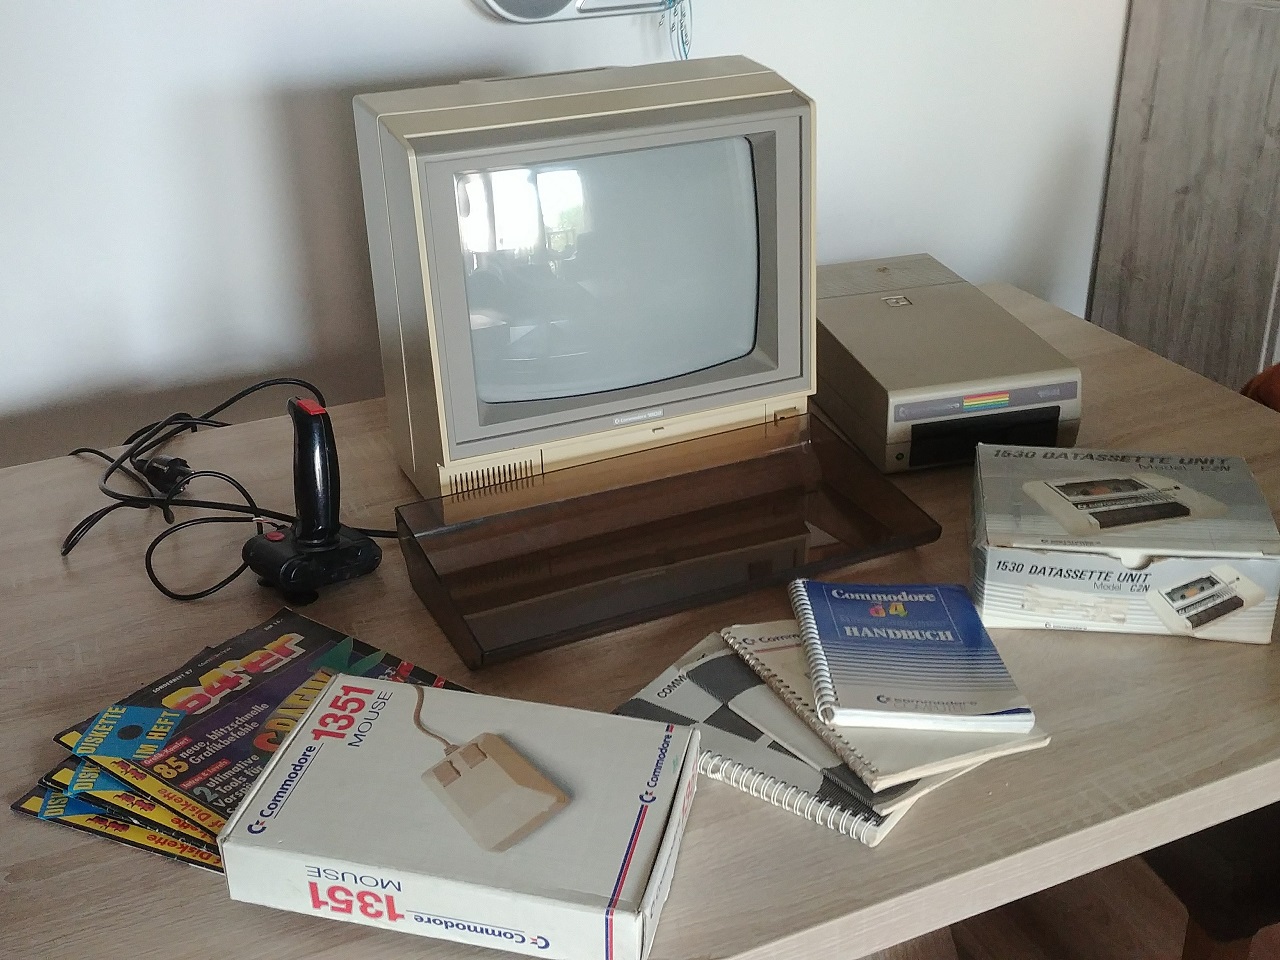 Typische Grundausstattung eines Commodore 64-Benutzers. Nur der Commodore 64 selbst fehlt bei diesem Setup. (Bild: Leopold Brodecky)